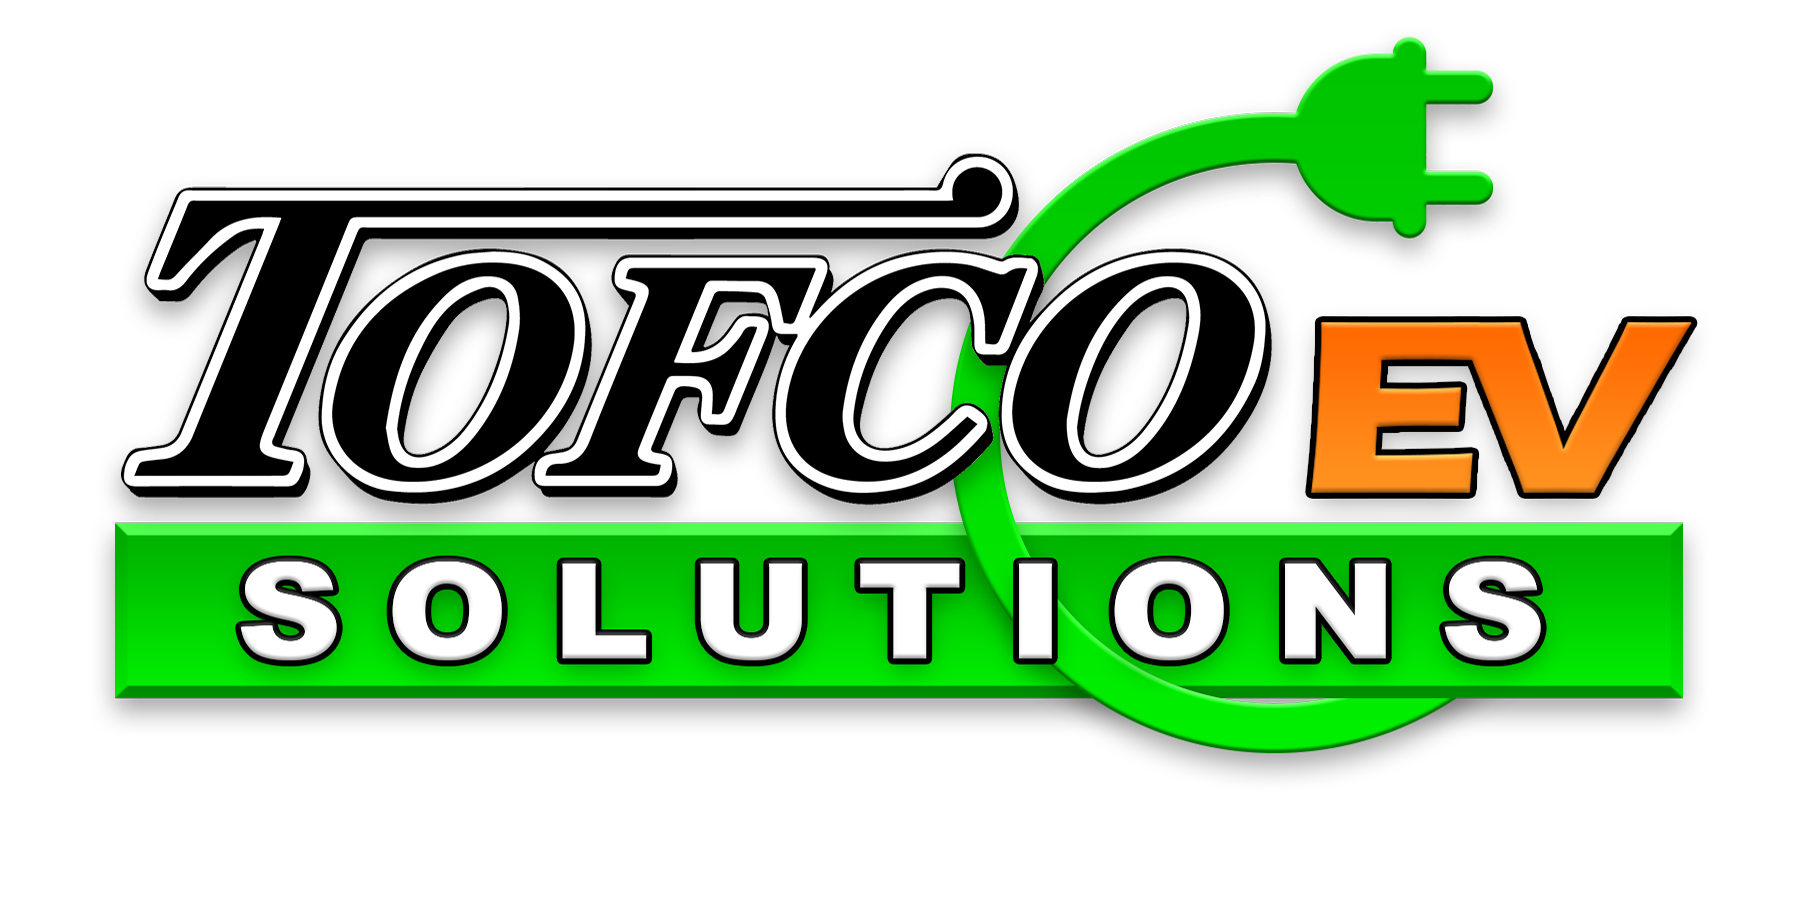 Tofco Logo EV